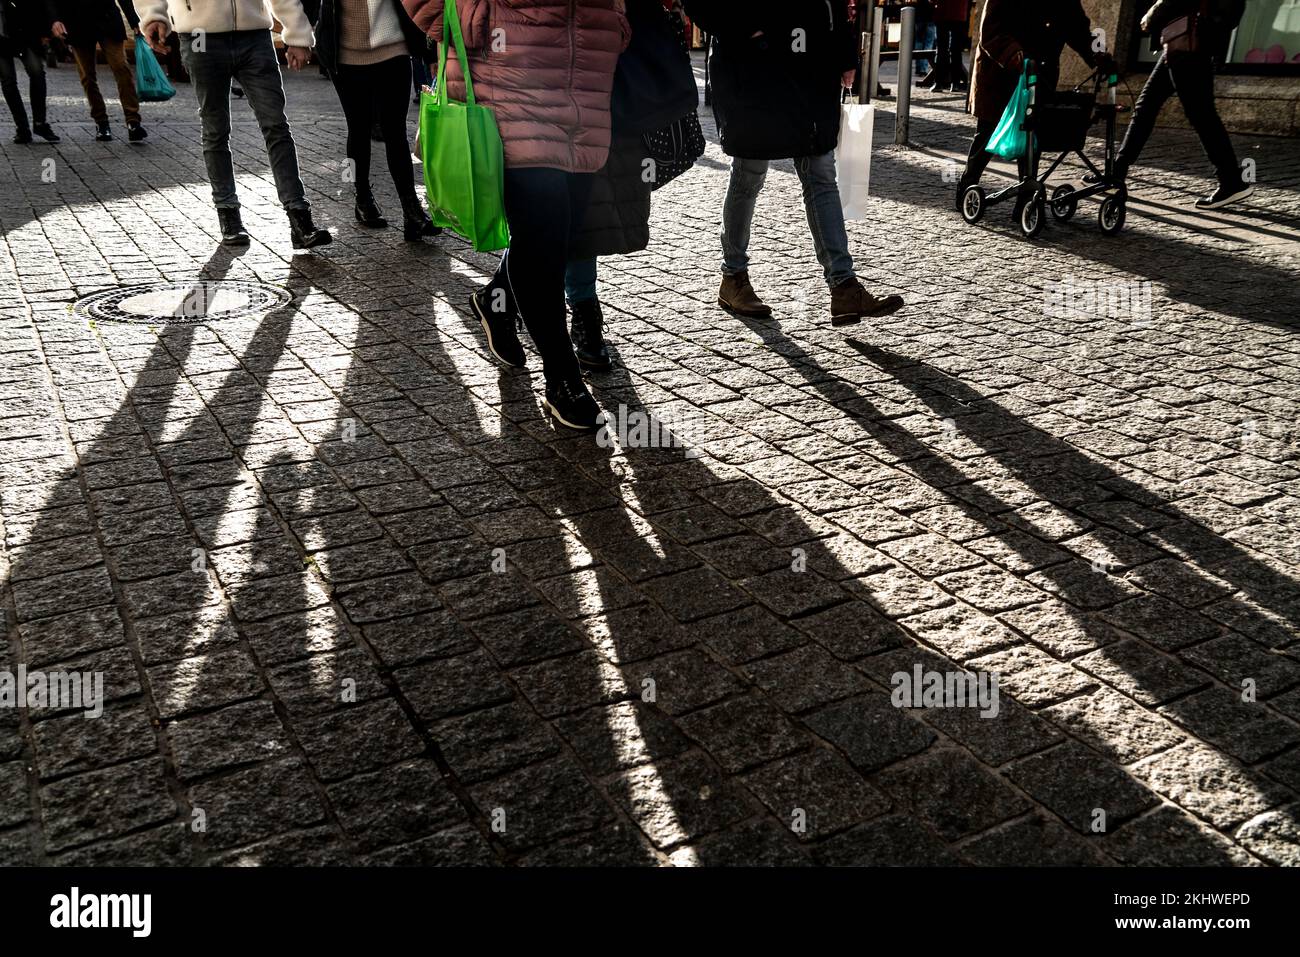 Pedestrians in a pedestrian zone, winter, long shadows, Dortmund, NRW, Germany, Pedestrians in a pedestrian zone, winter, long shadows, Dortmund, NRW, Stock Photo